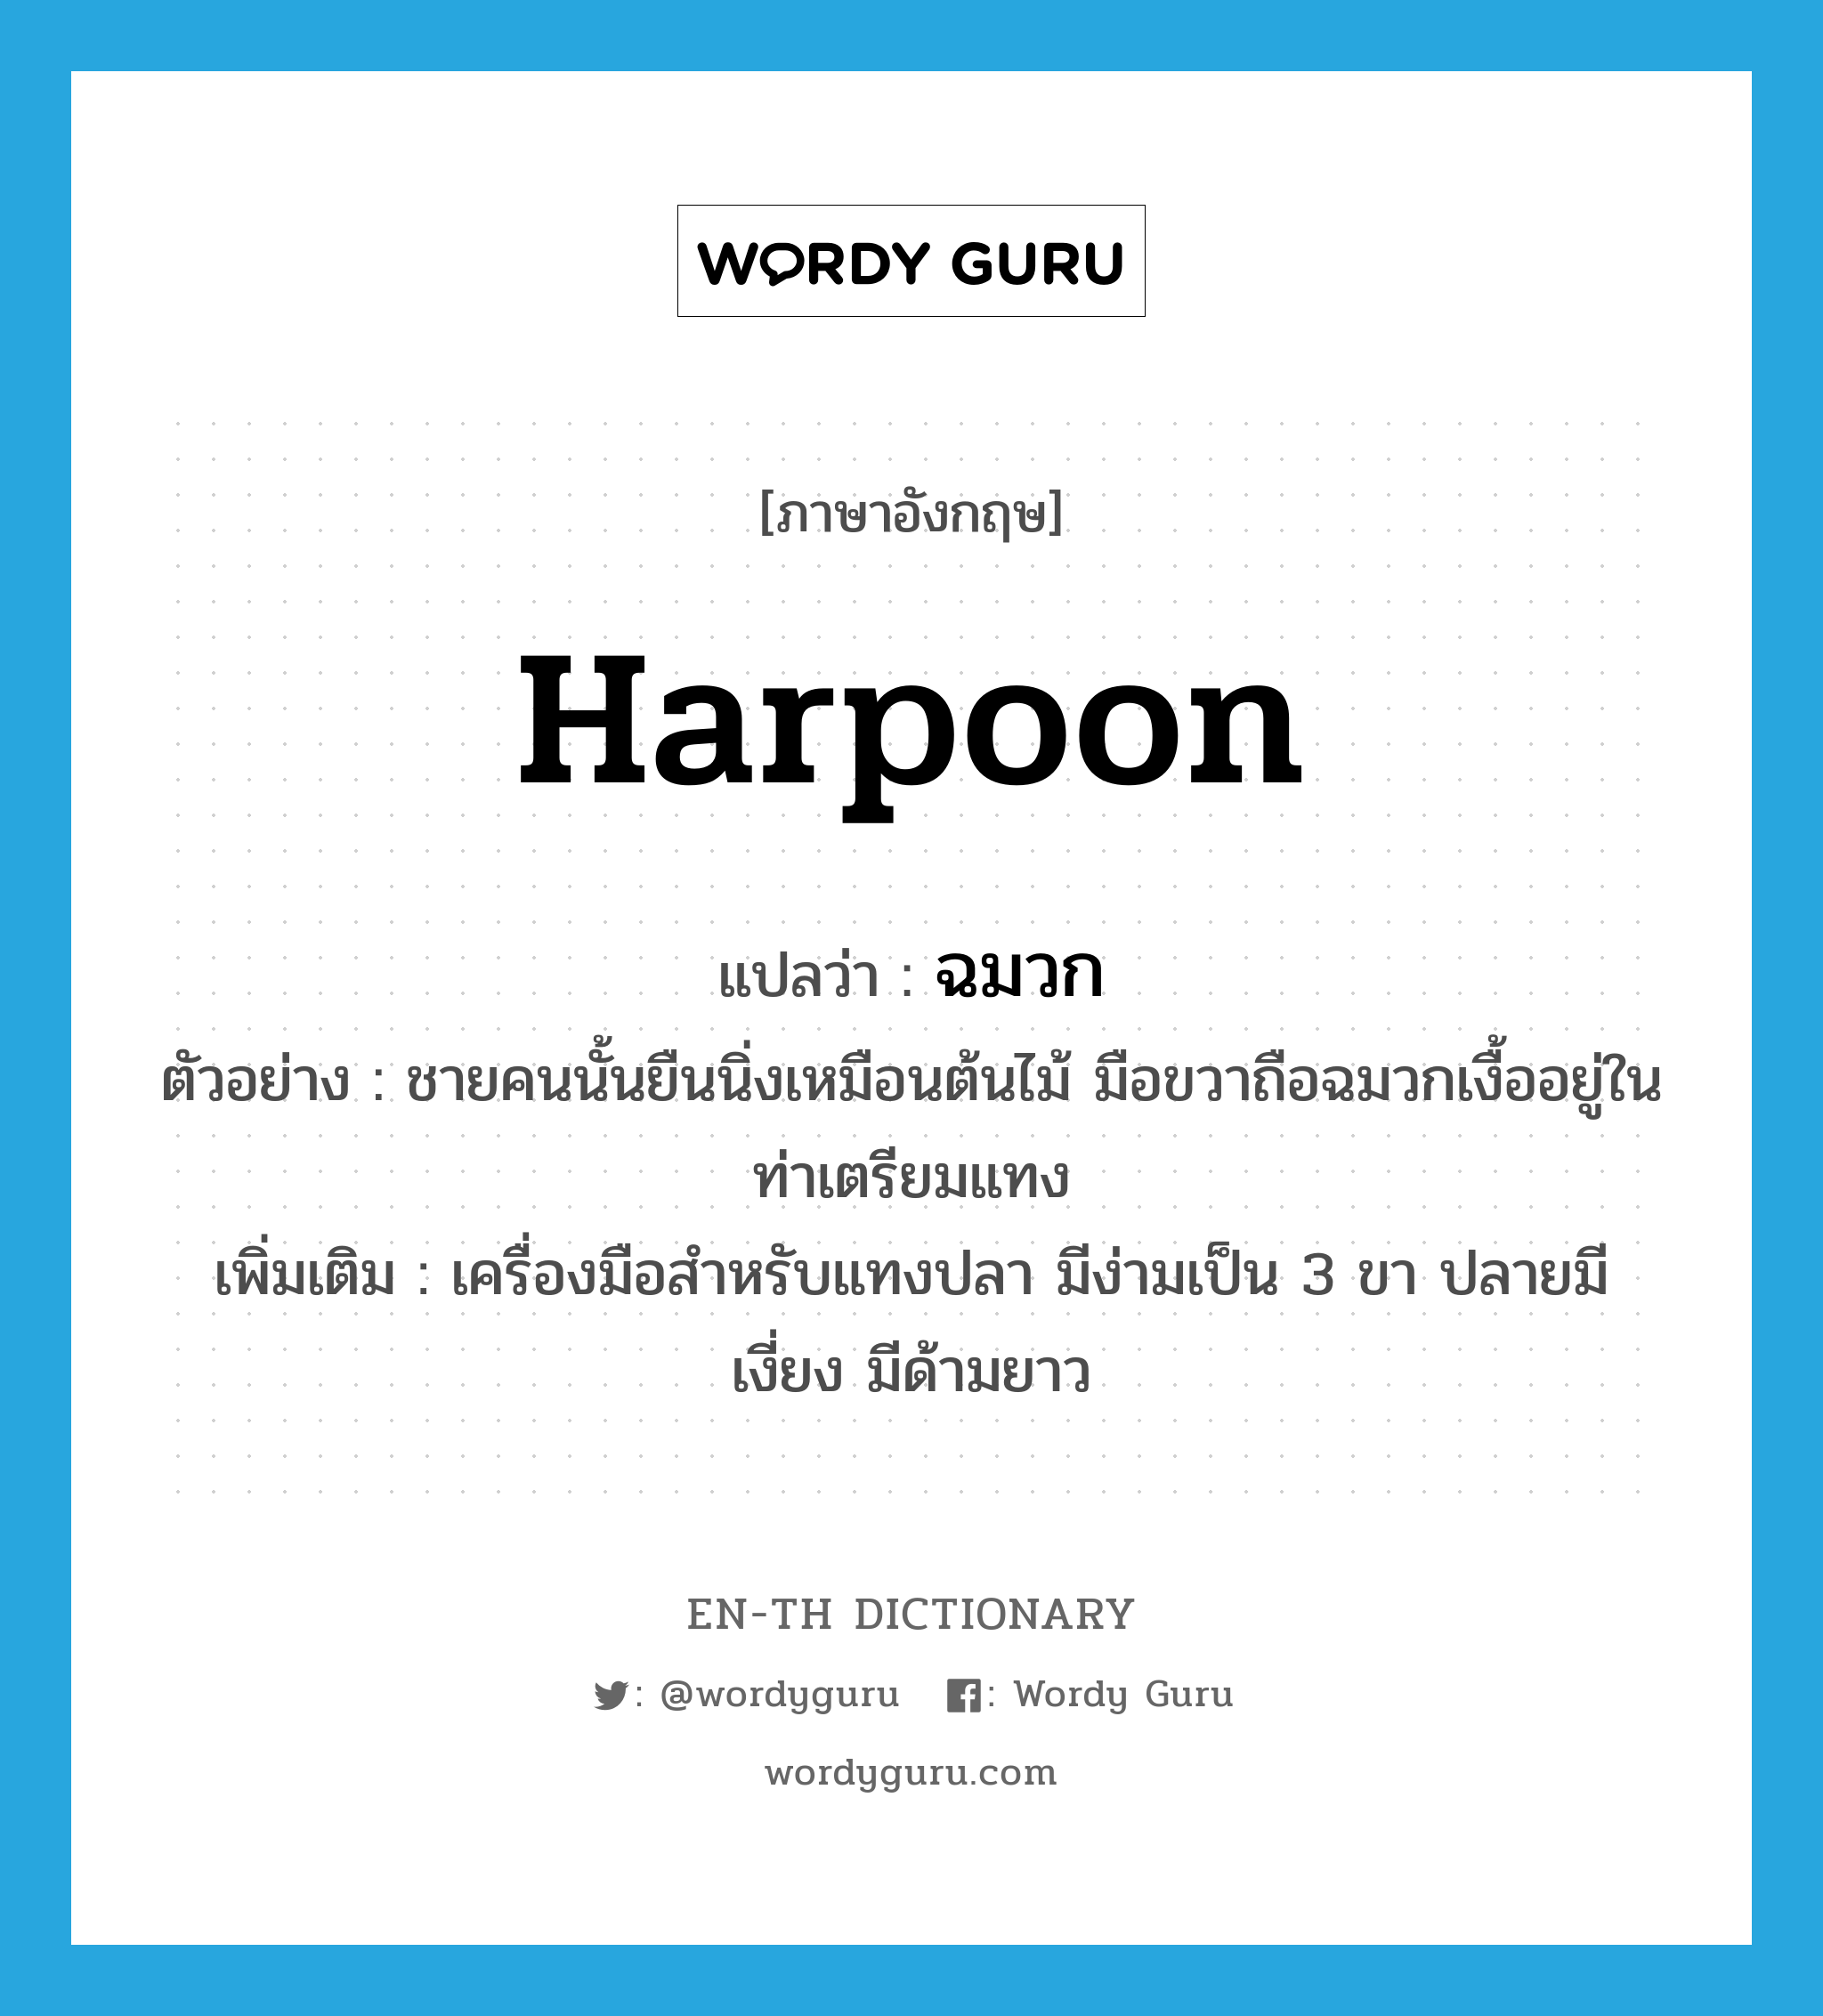 harpoon แปลว่า?, คำศัพท์ภาษาอังกฤษ harpoon แปลว่า ฉมวก ประเภท N ตัวอย่าง ชายคนนั้นยืนนิ่งเหมือนต้นไม้ มือขวาถือฉมวกเงื้ออยู่ในท่าเตรียมแทง เพิ่มเติม เครื่องมือสำหรับแทงปลา มีง่ามเป็น 3 ขา ปลายมีเงี่ยง มีด้ามยาว หมวด N